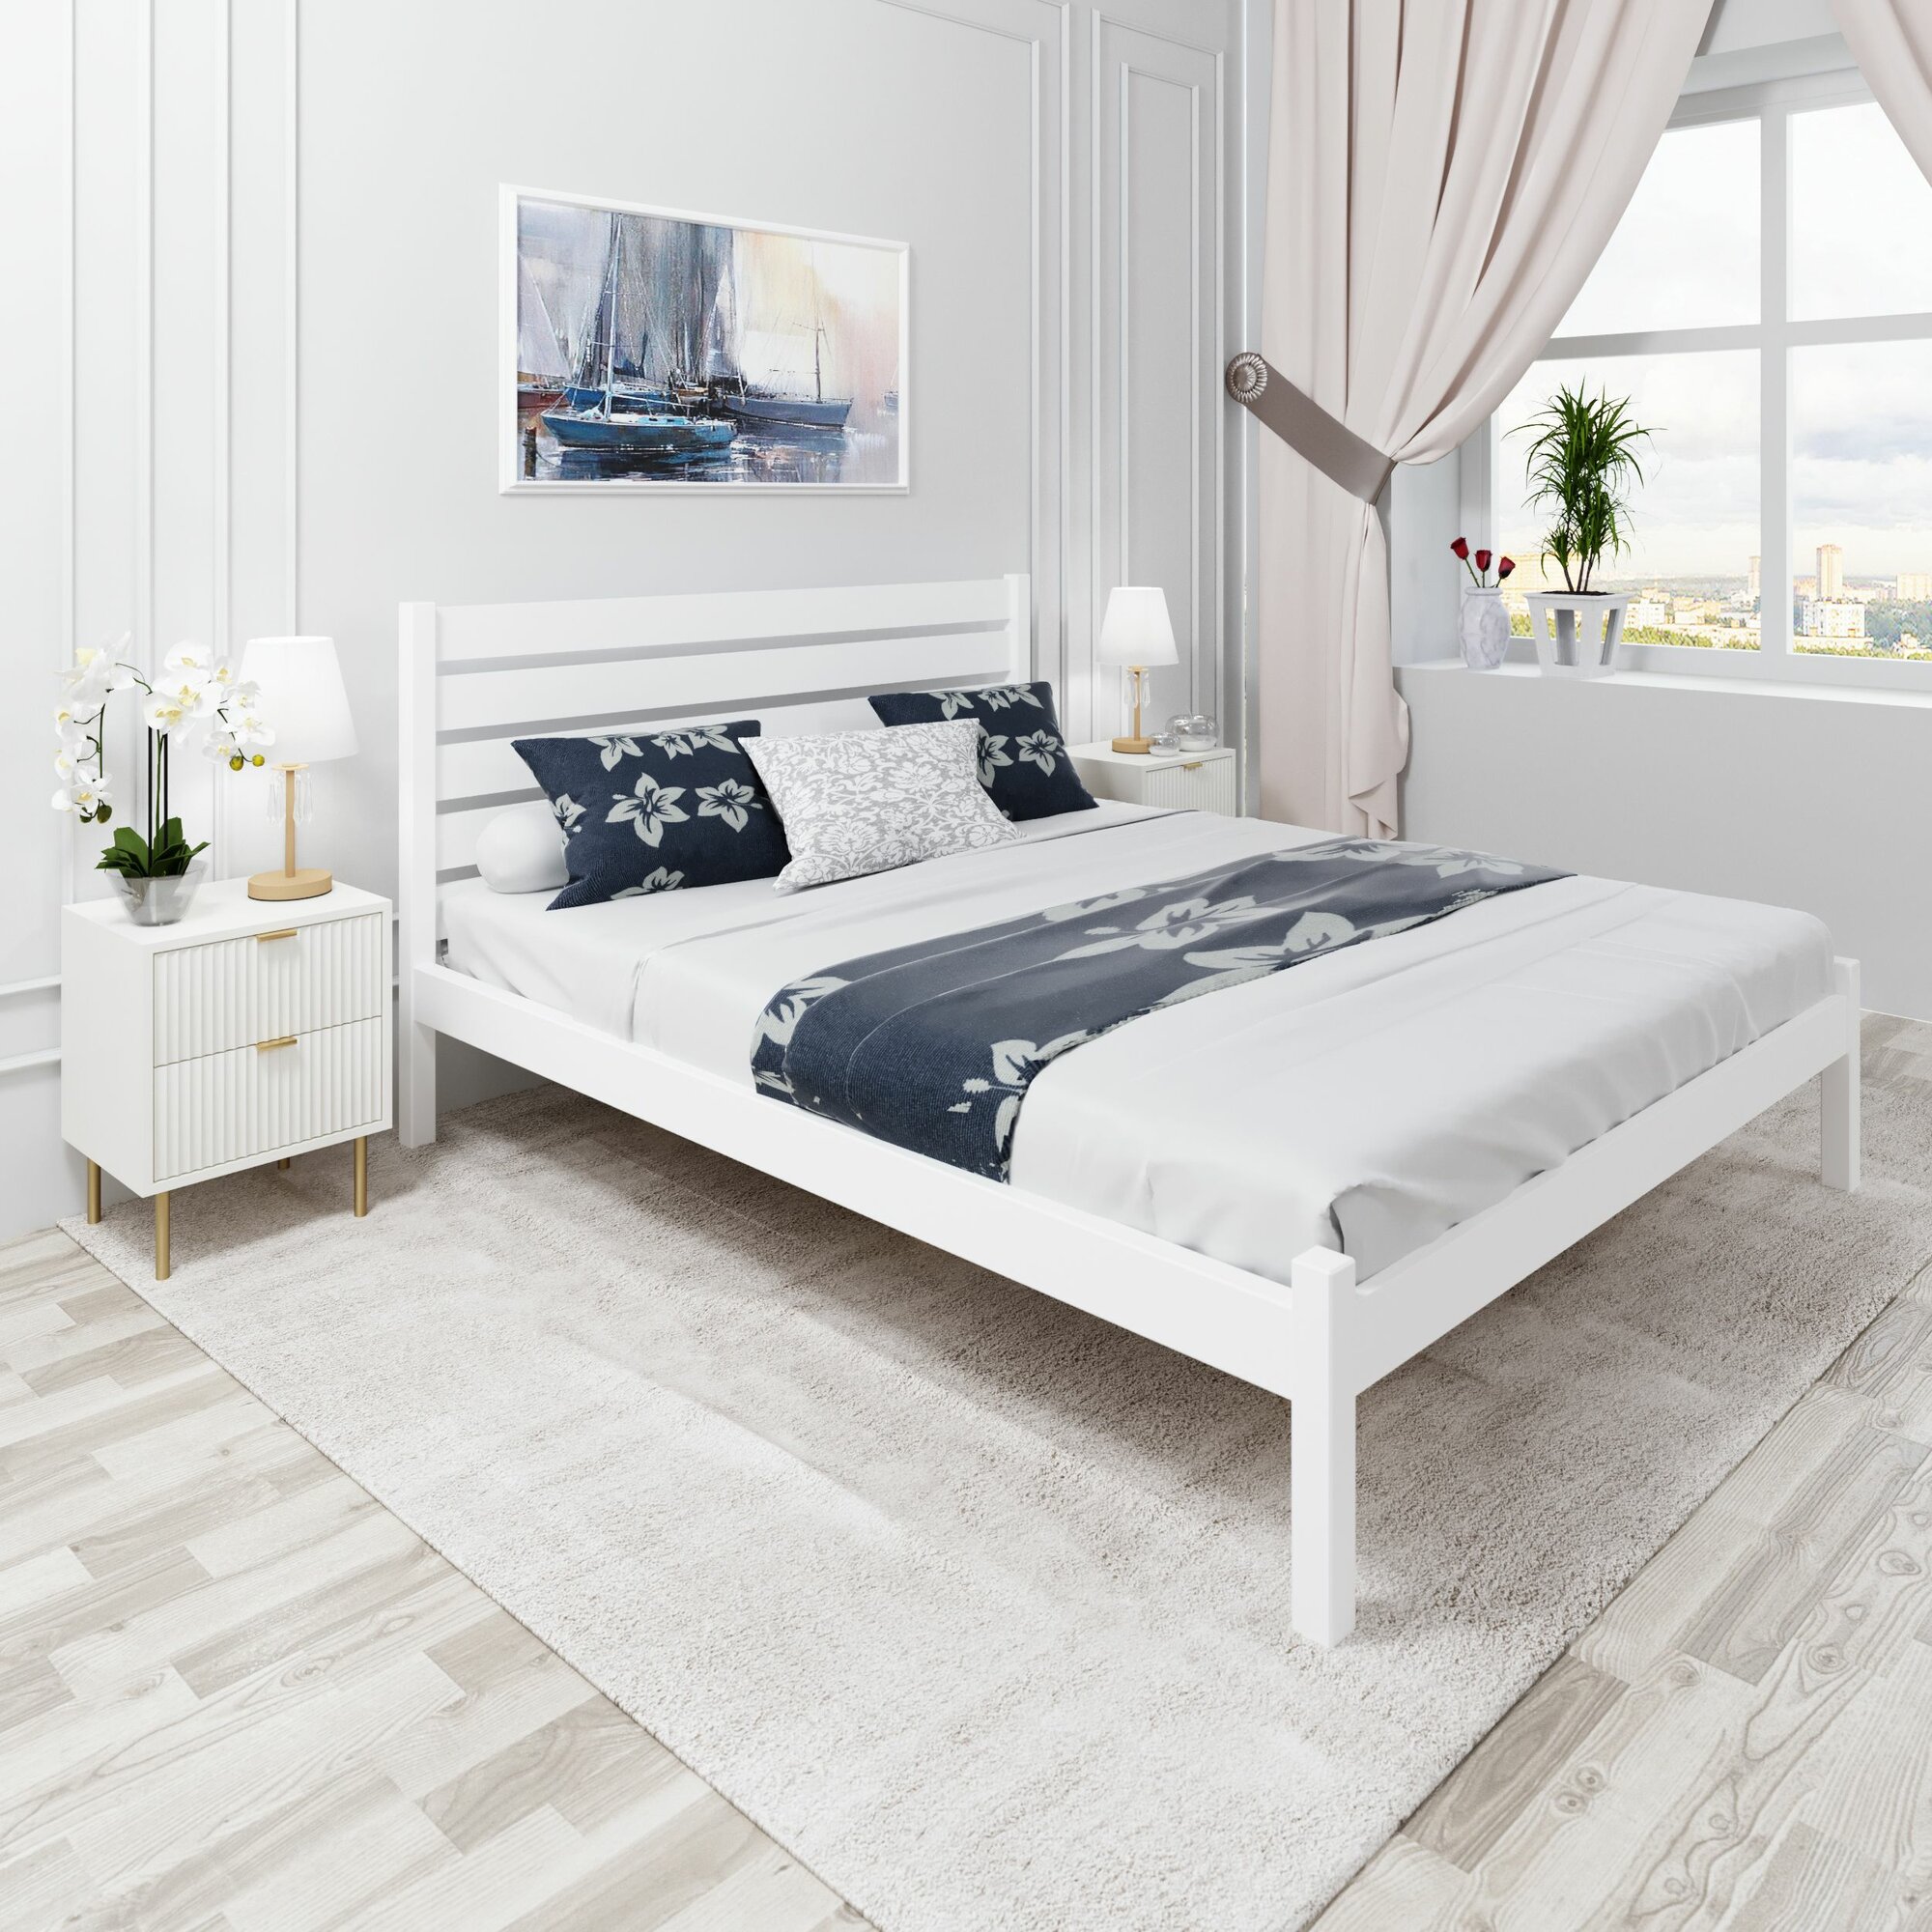 Кровать двуспальная Классика из массива сосны с высокой спинкой и реечным основанием, 200х140 см (габариты 210х150), цвет белый